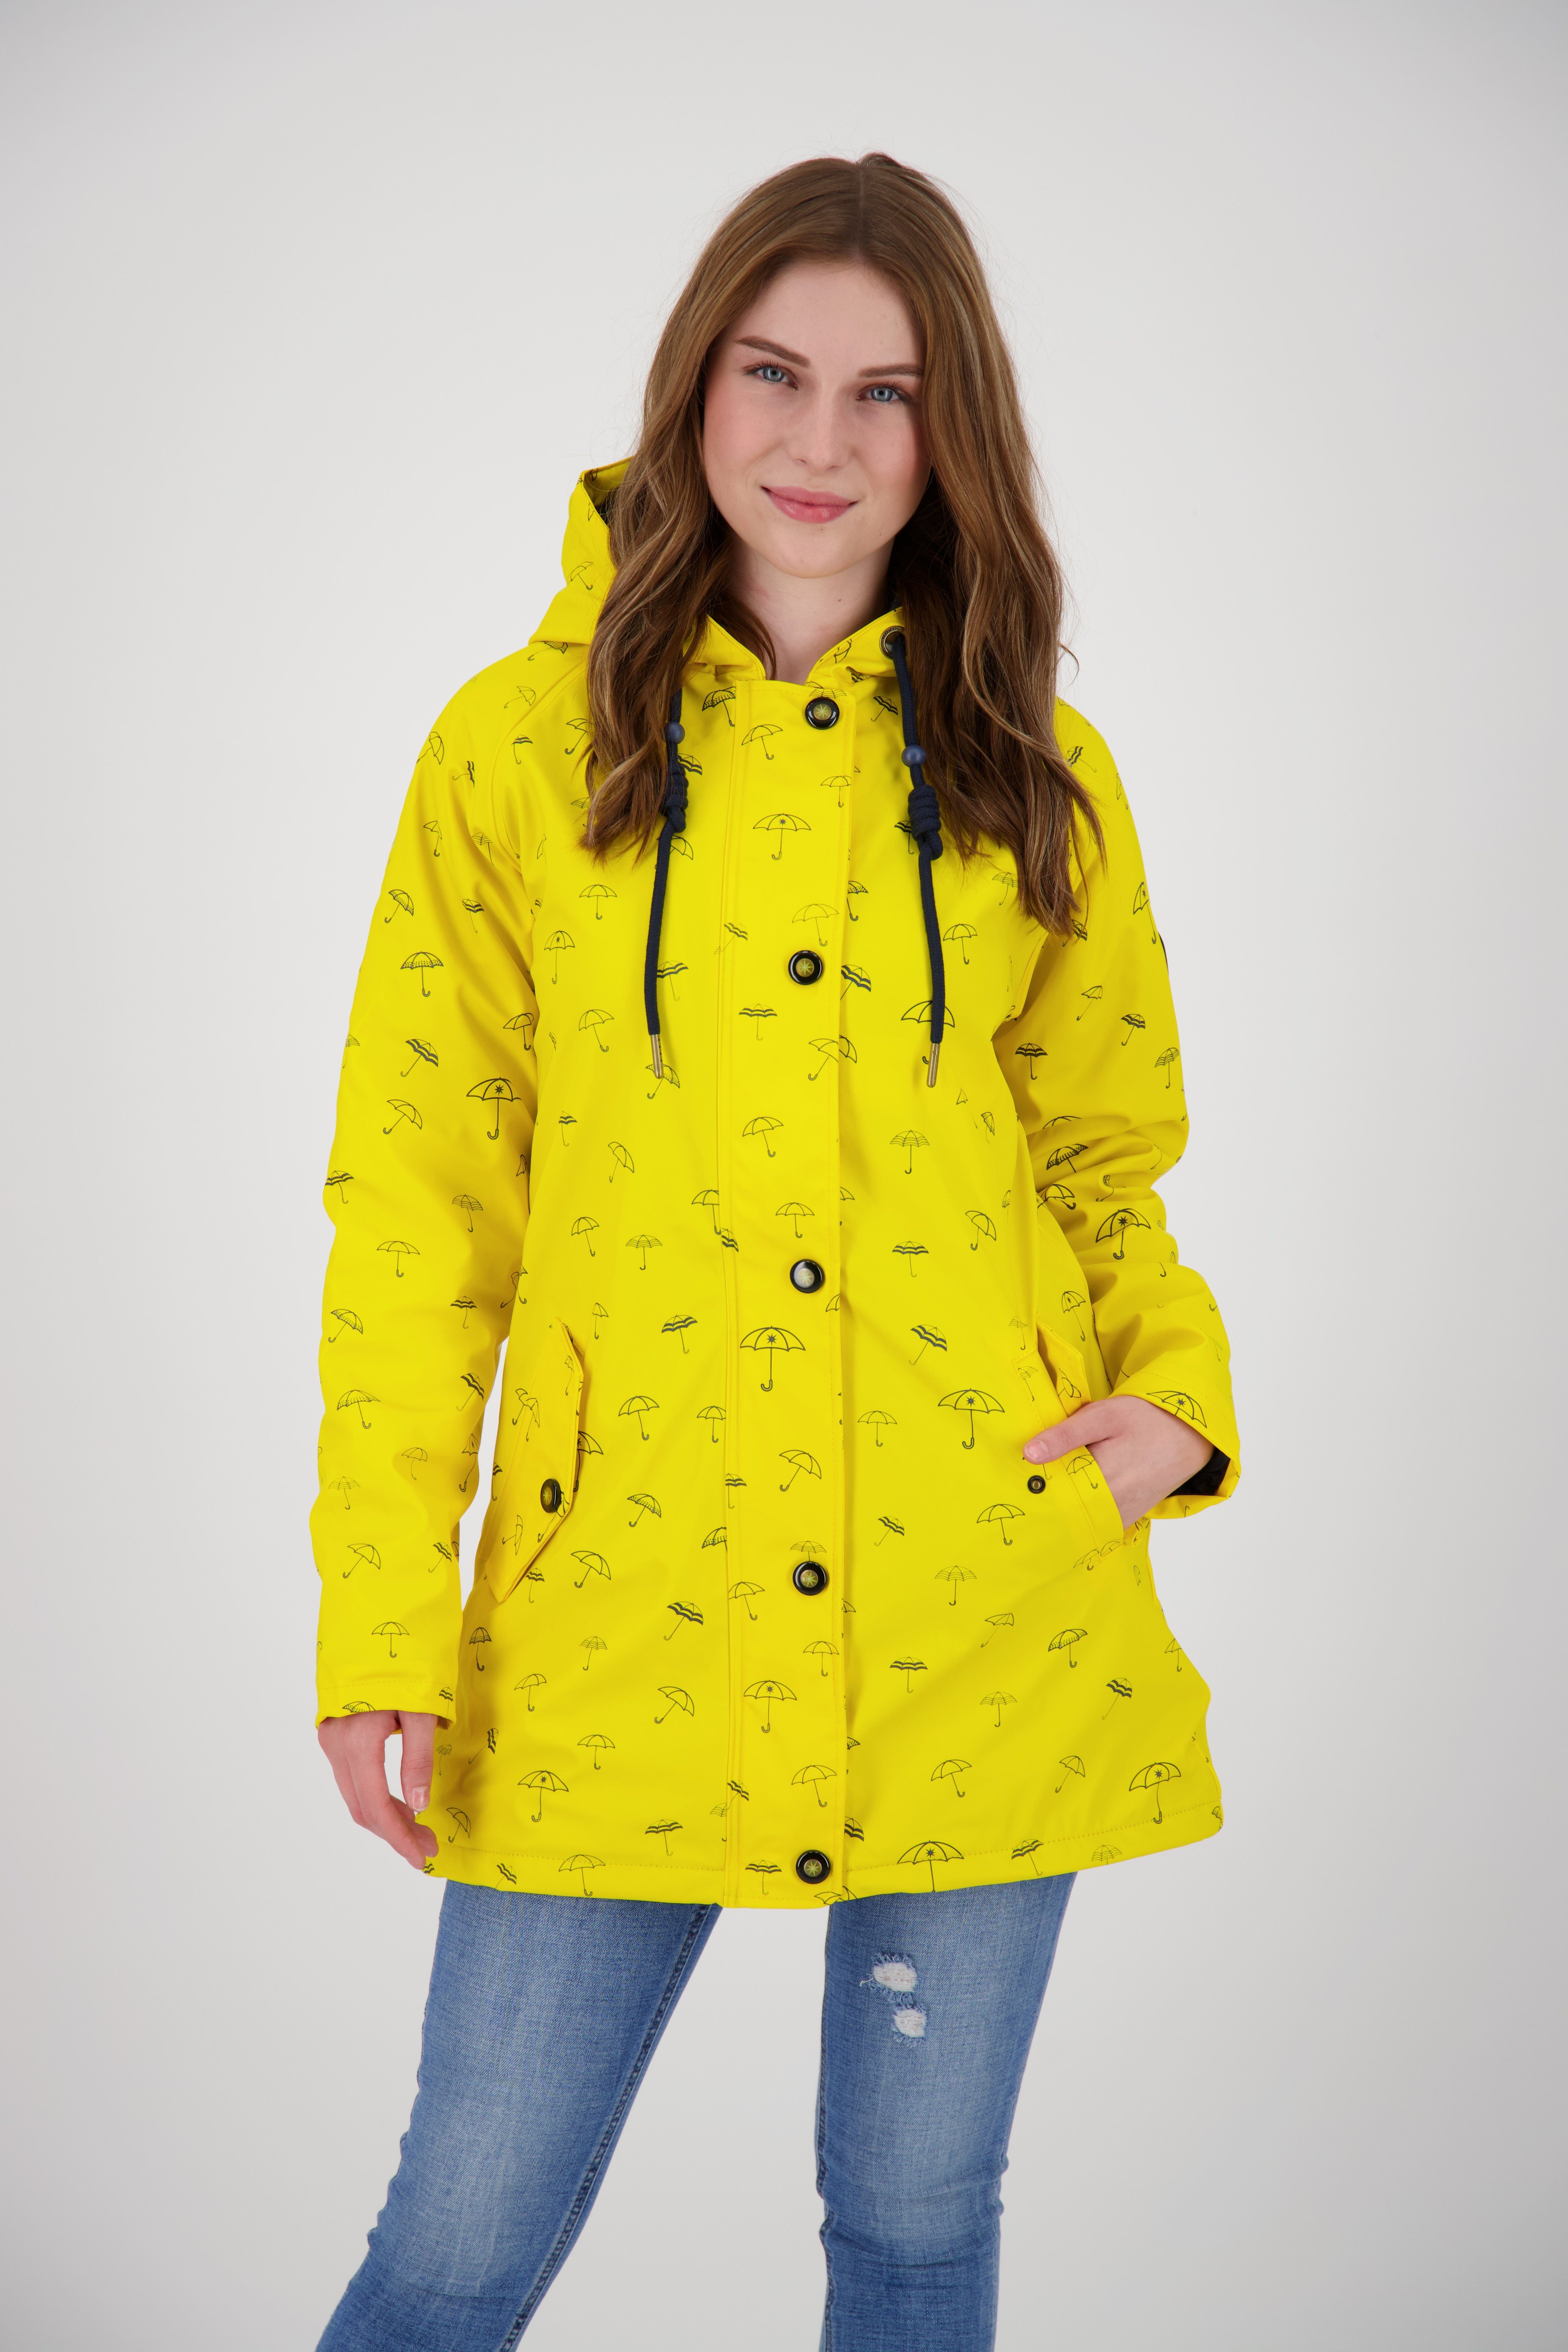 DEPROC Active Regenjacke Friesennerz #ankerglutmeer WOMEN CS auch in Großen Größen erhältlich sun yellow